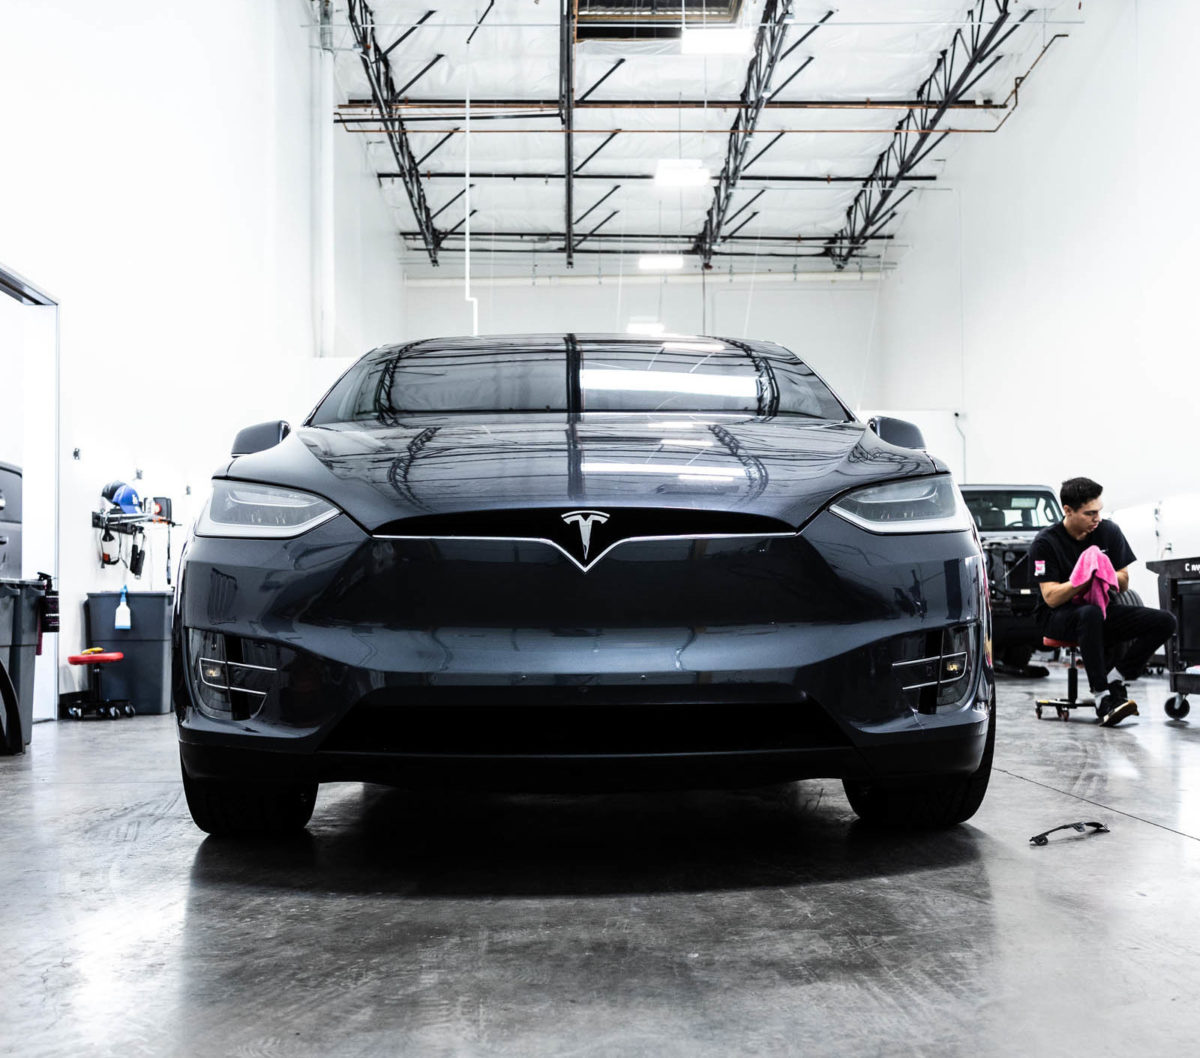 The Best Ceramic Coating for Tesla in 2022